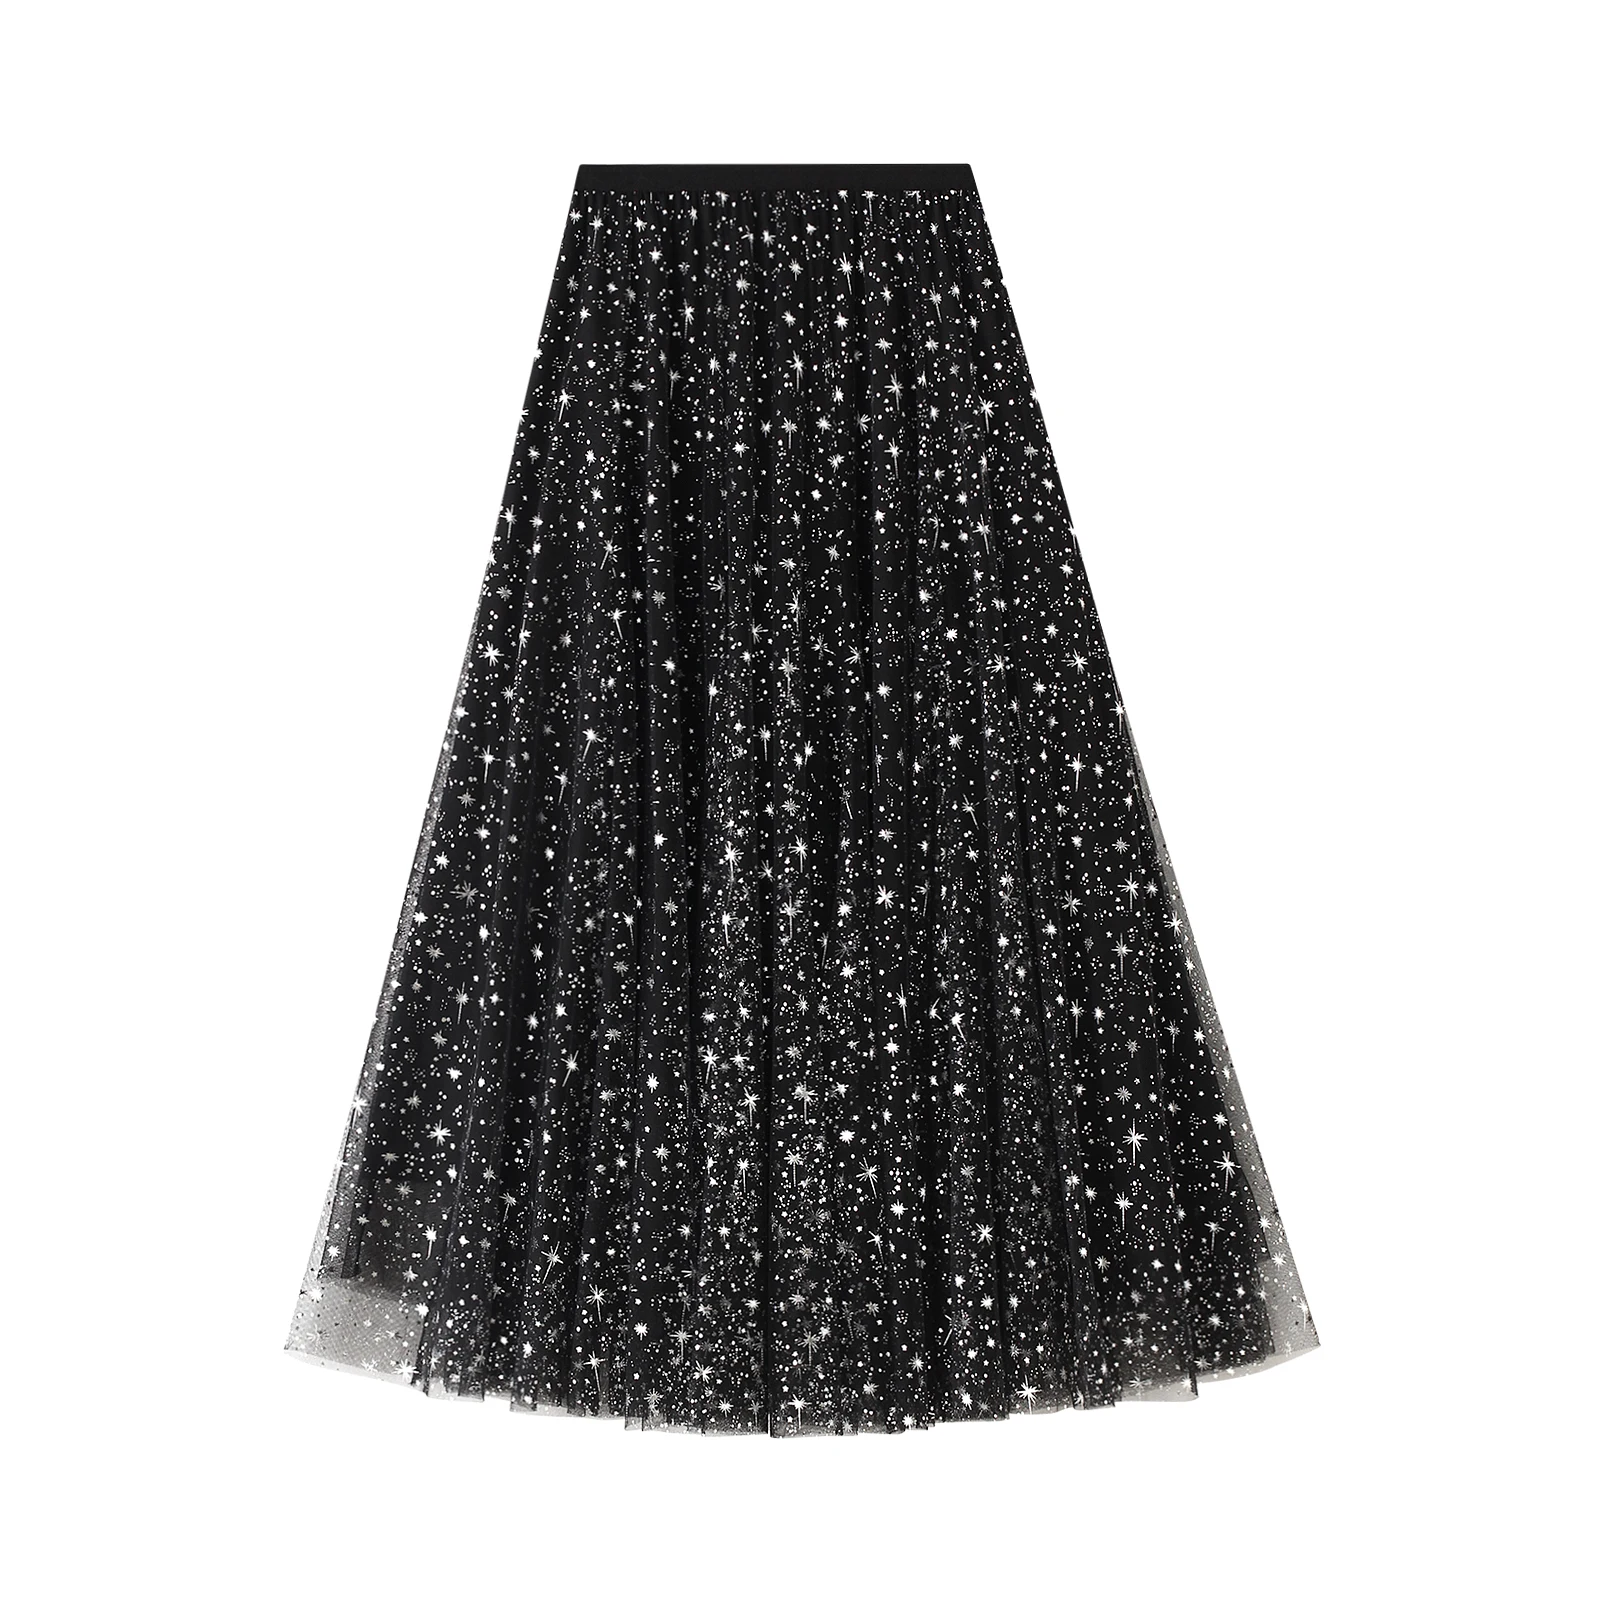 

Yoisdtxc Women s Tulle Skirt High Waist Fairy Sequin Glitter Tiered Layered Skirt Prom Party Tulle Tutu A-line Midi Skirt